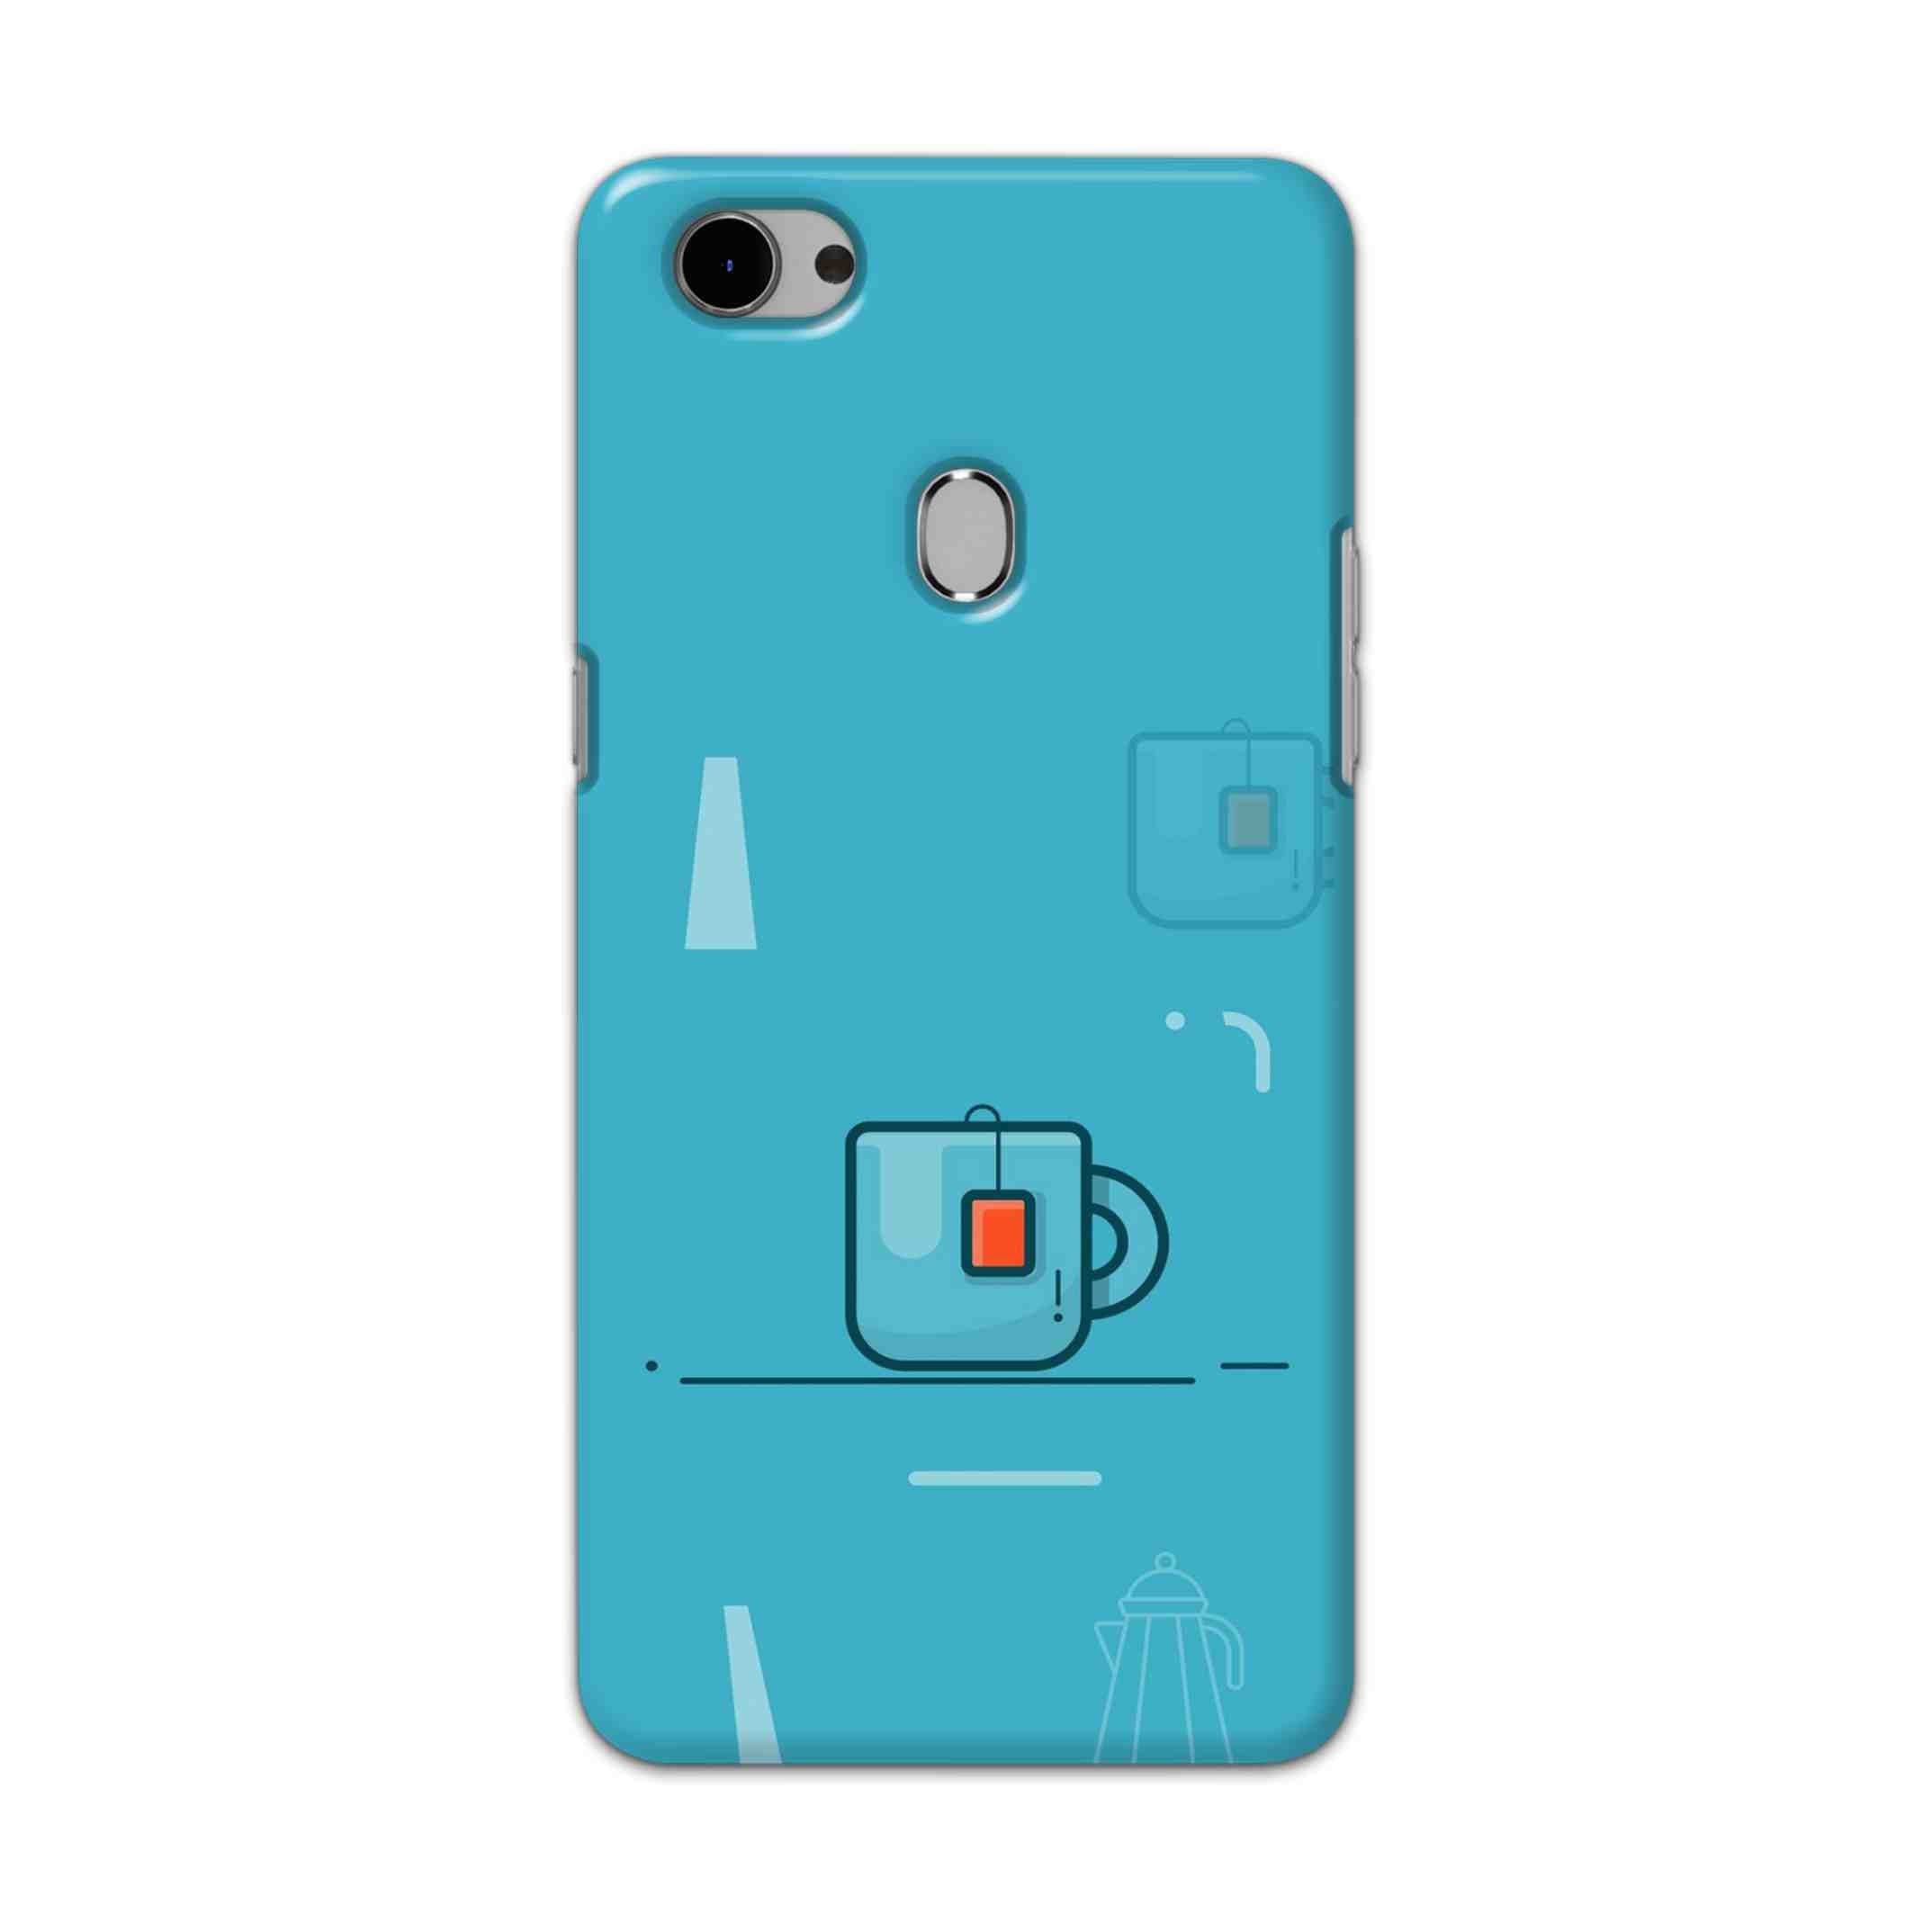 Buy Green Tea Hard Back Mobile Phone Case Cover For Oppo F7 Online